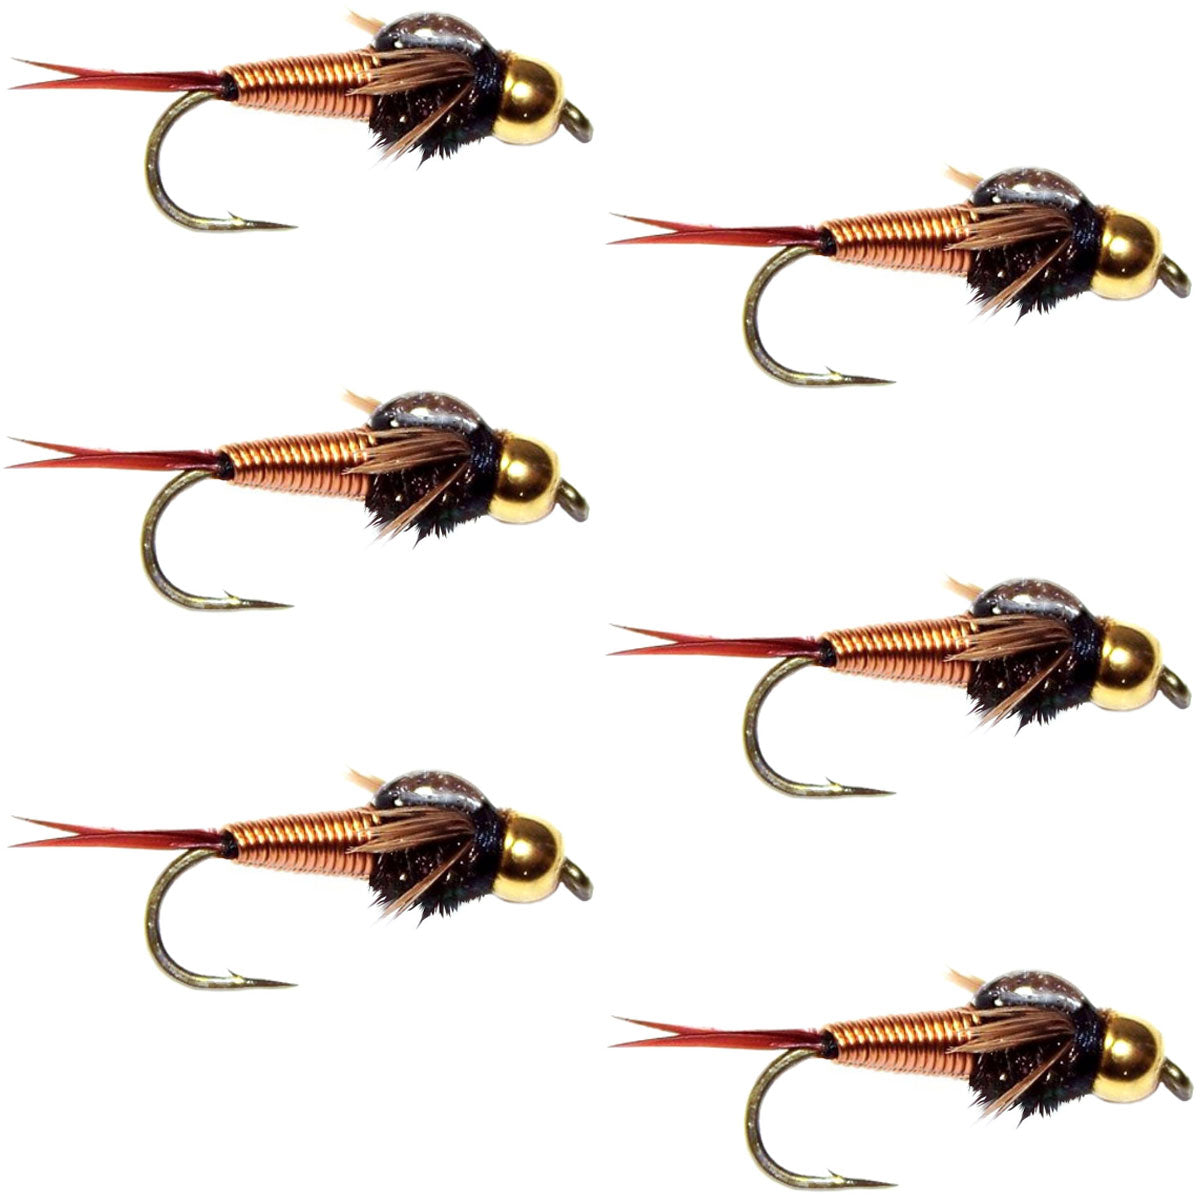 Tungsten Bead Head Copper John Nymph Fly Fishing Flies - Set of 6 Flies Hook Size 12